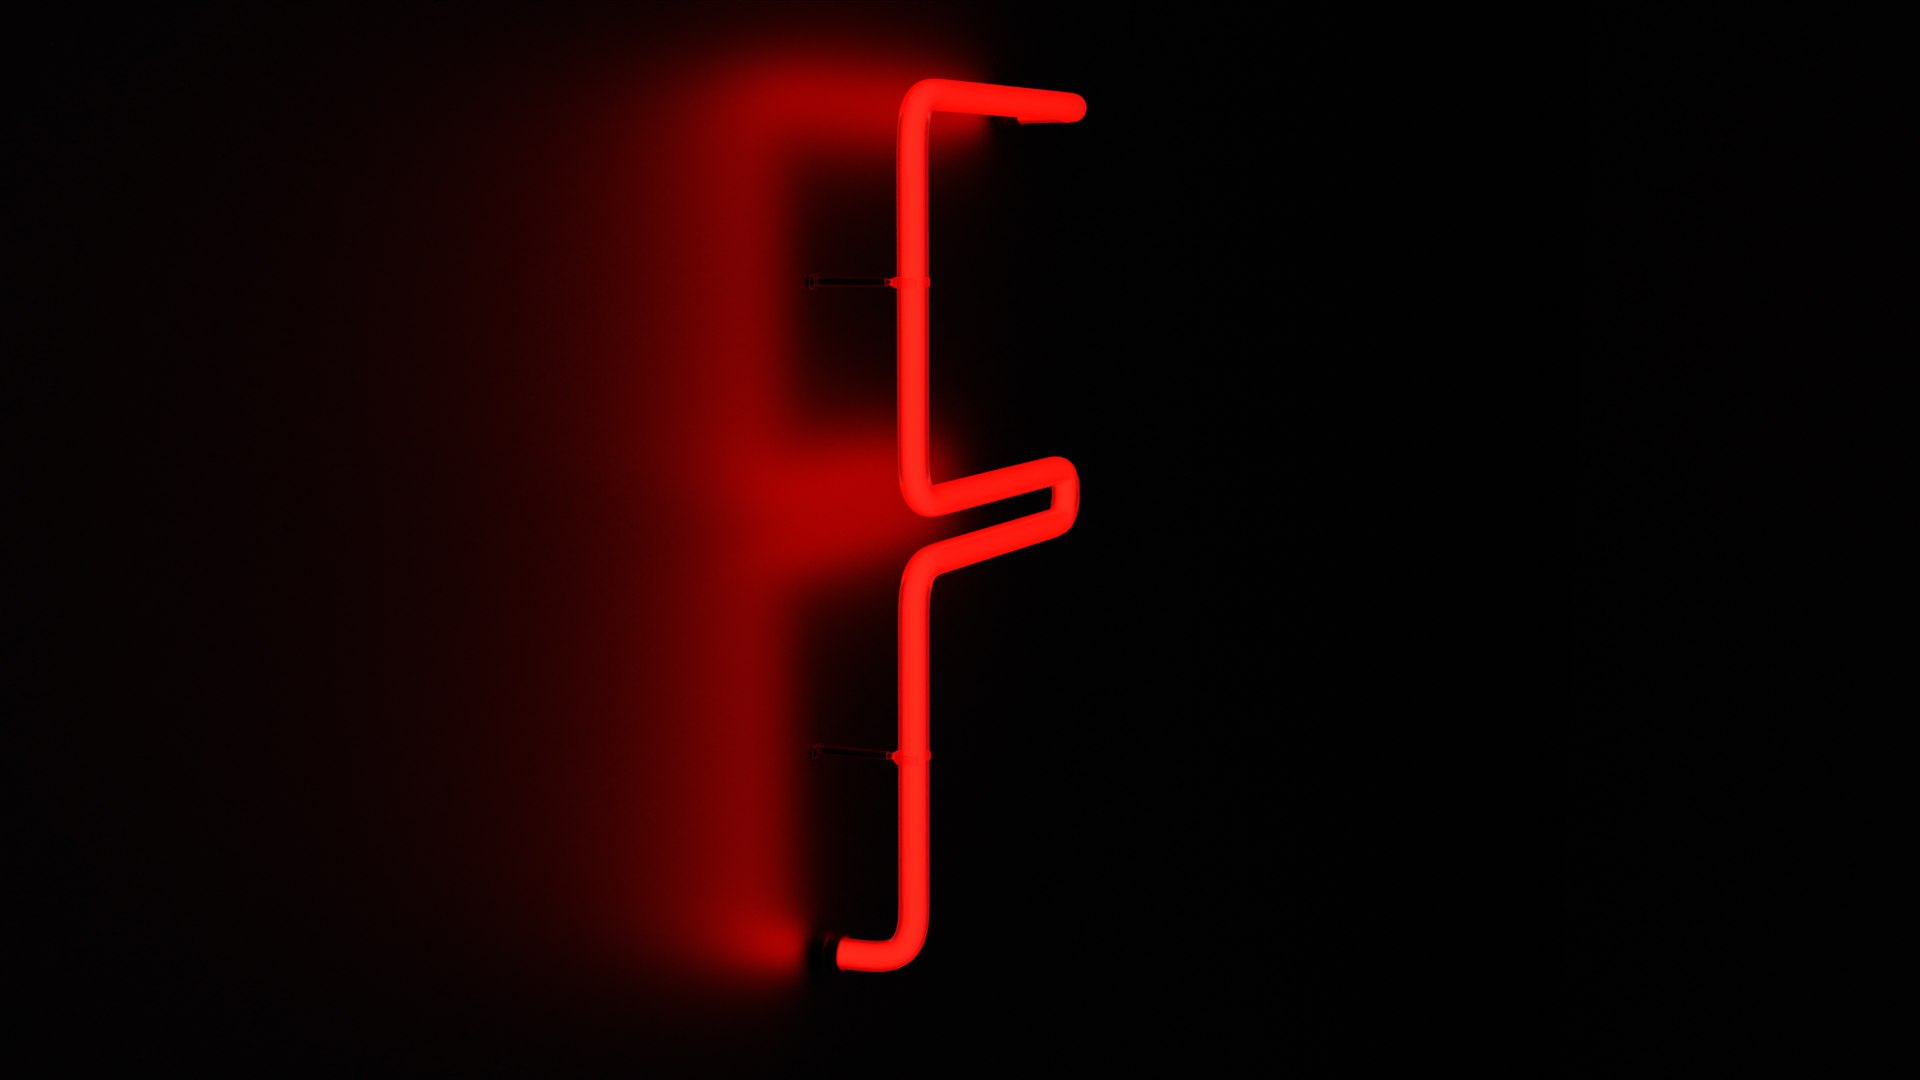 3D Neon Red Alphabet F - TurboSquid 2139807